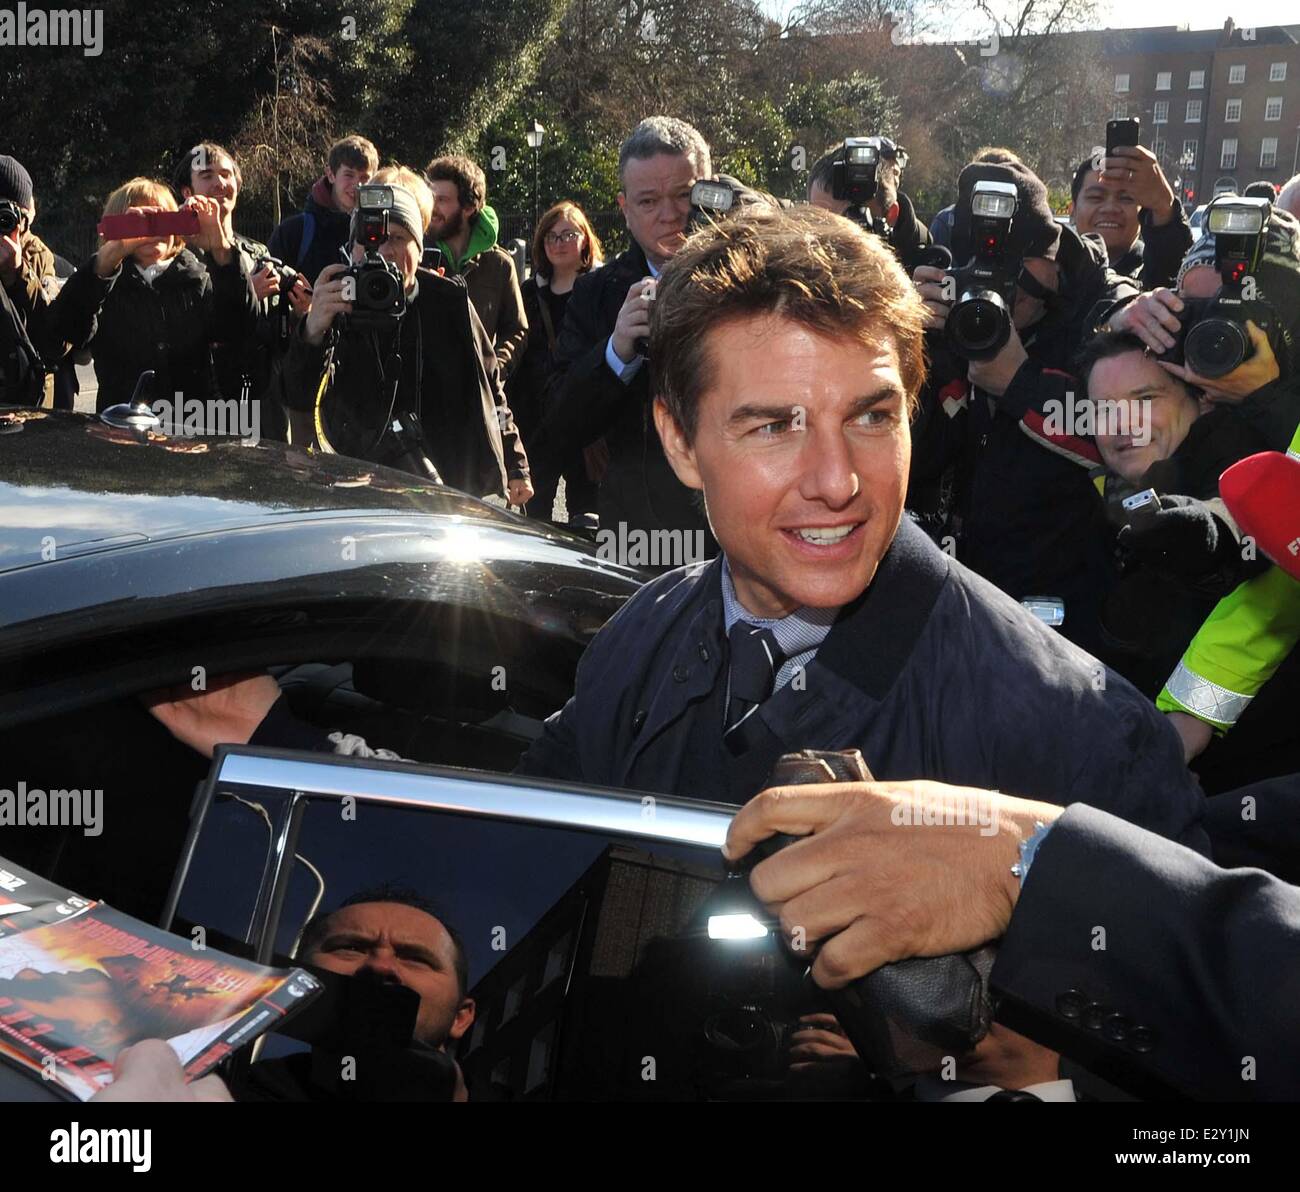 L'attore Tom Cruise è stato onorato con un ricevimento in Dublin ospitato dal dipartimento degli affari esteri e il turismo in Irlanda. Egli ha anche spento spento alla Guinness Storehouse a campione alcuni Guinness. Il suo minder era visto portando alcuni sacchi di Guinness per la sua auto da Foto Stock